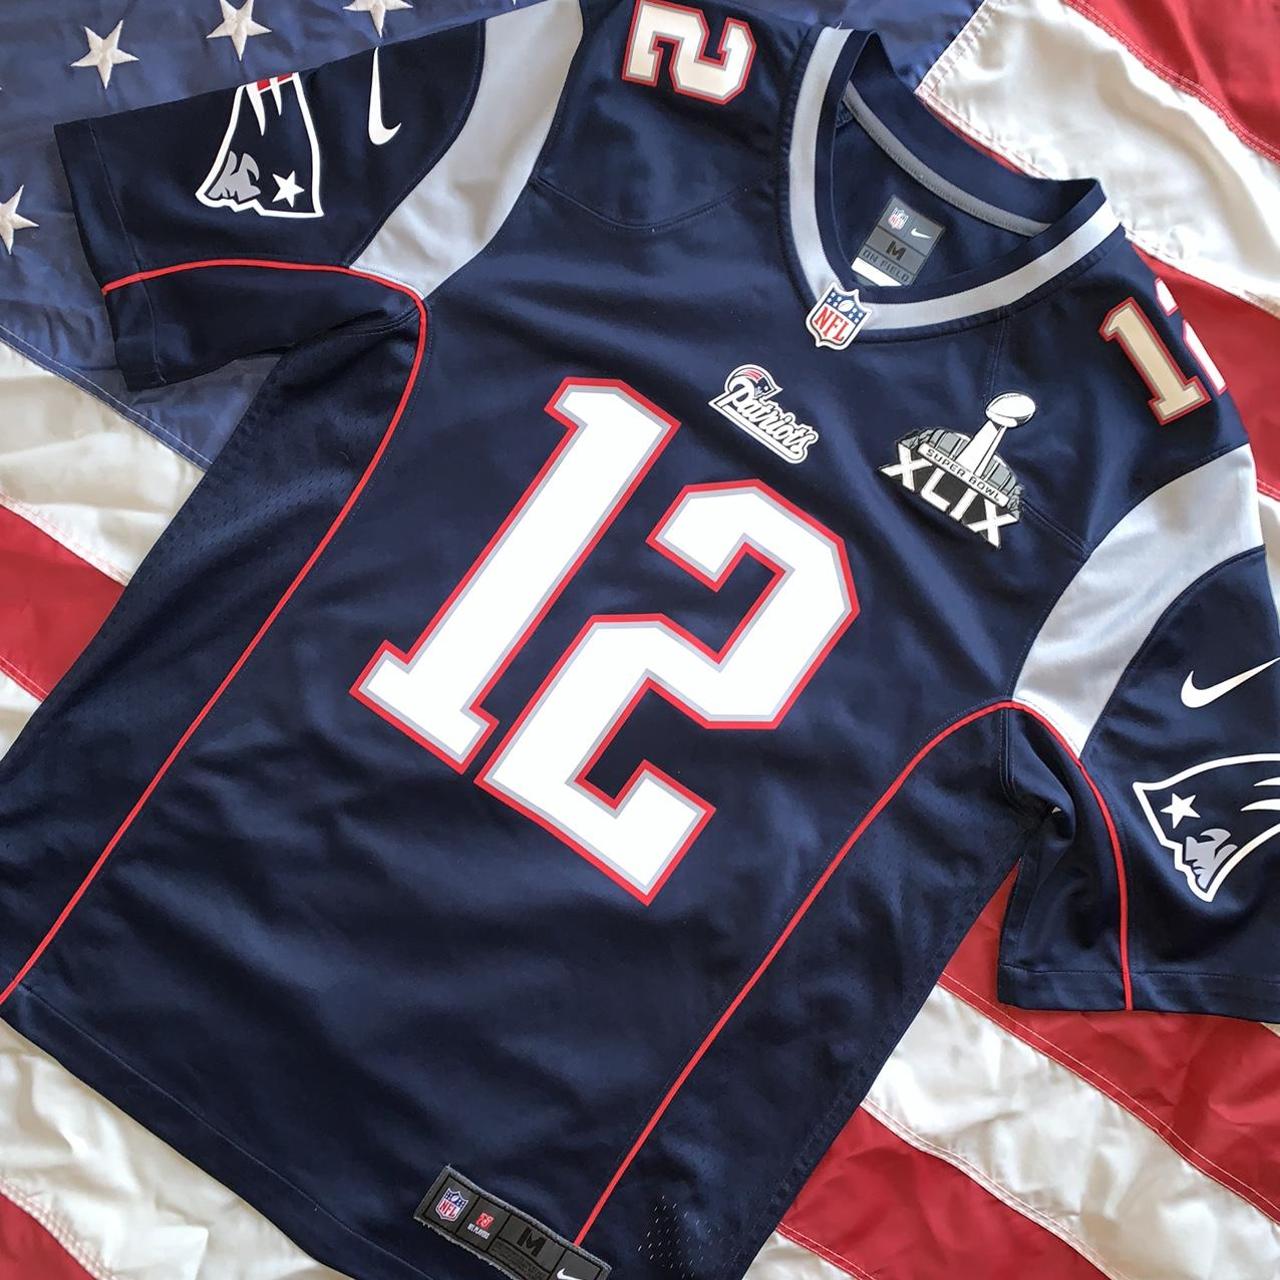 Nike NFL Patriots Tom Brady Jersey - S Nike NFL - Depop